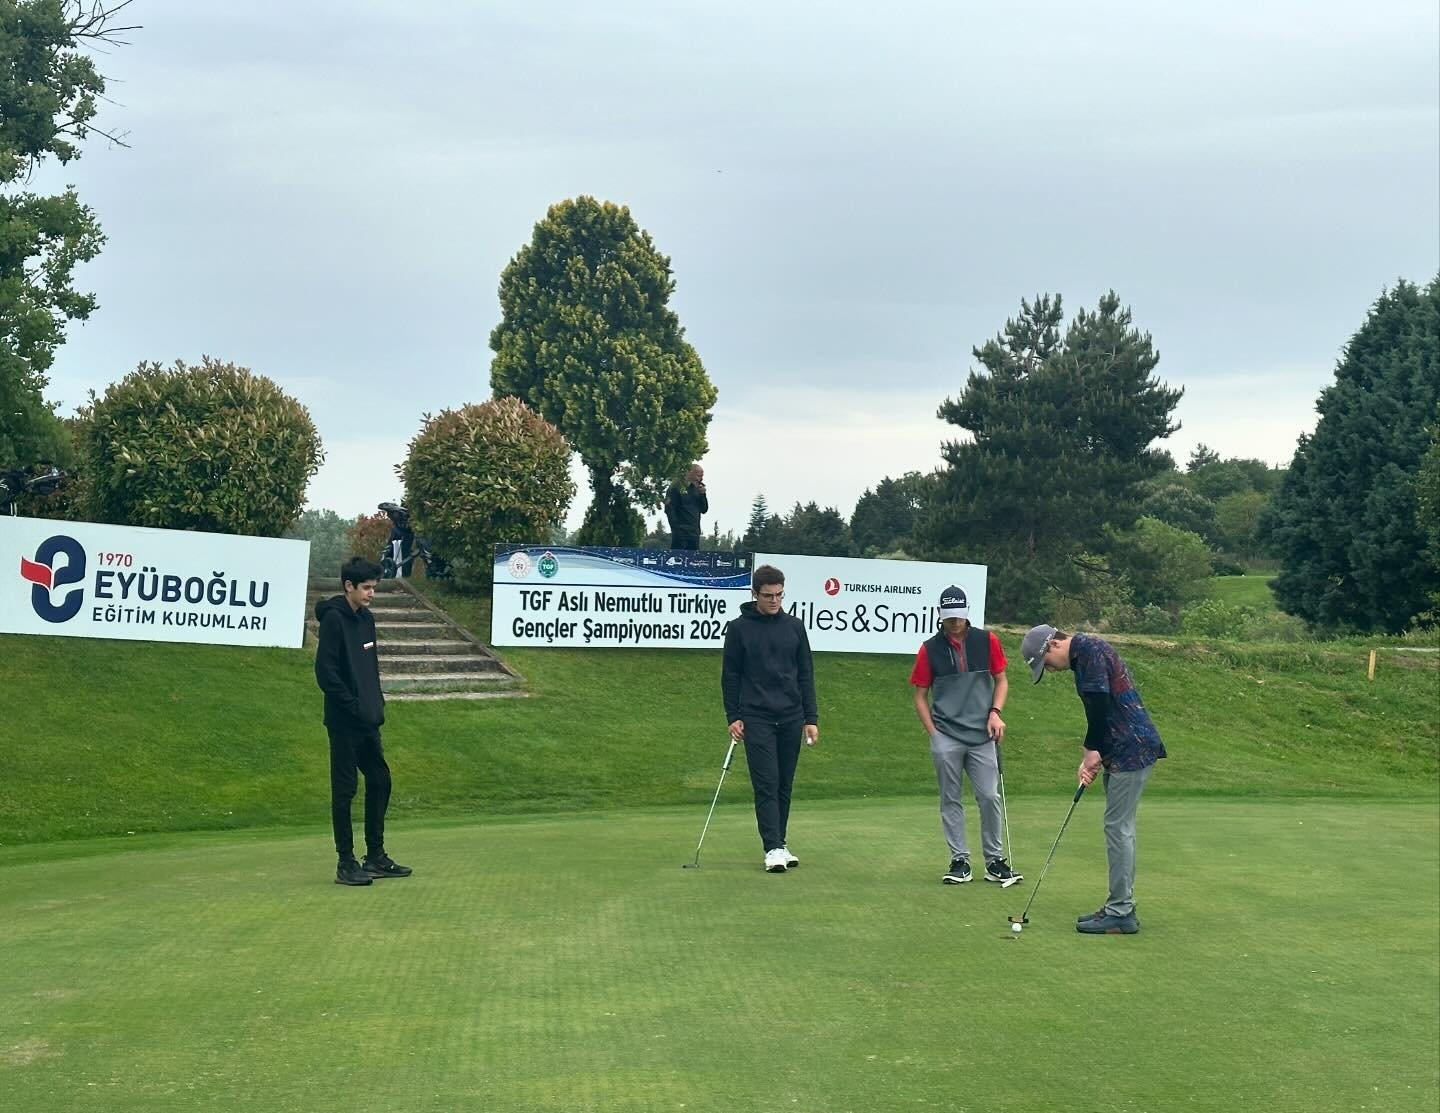 استقبلت ملاعب الغولف التركية العديد من الفعاليات والمسابقات